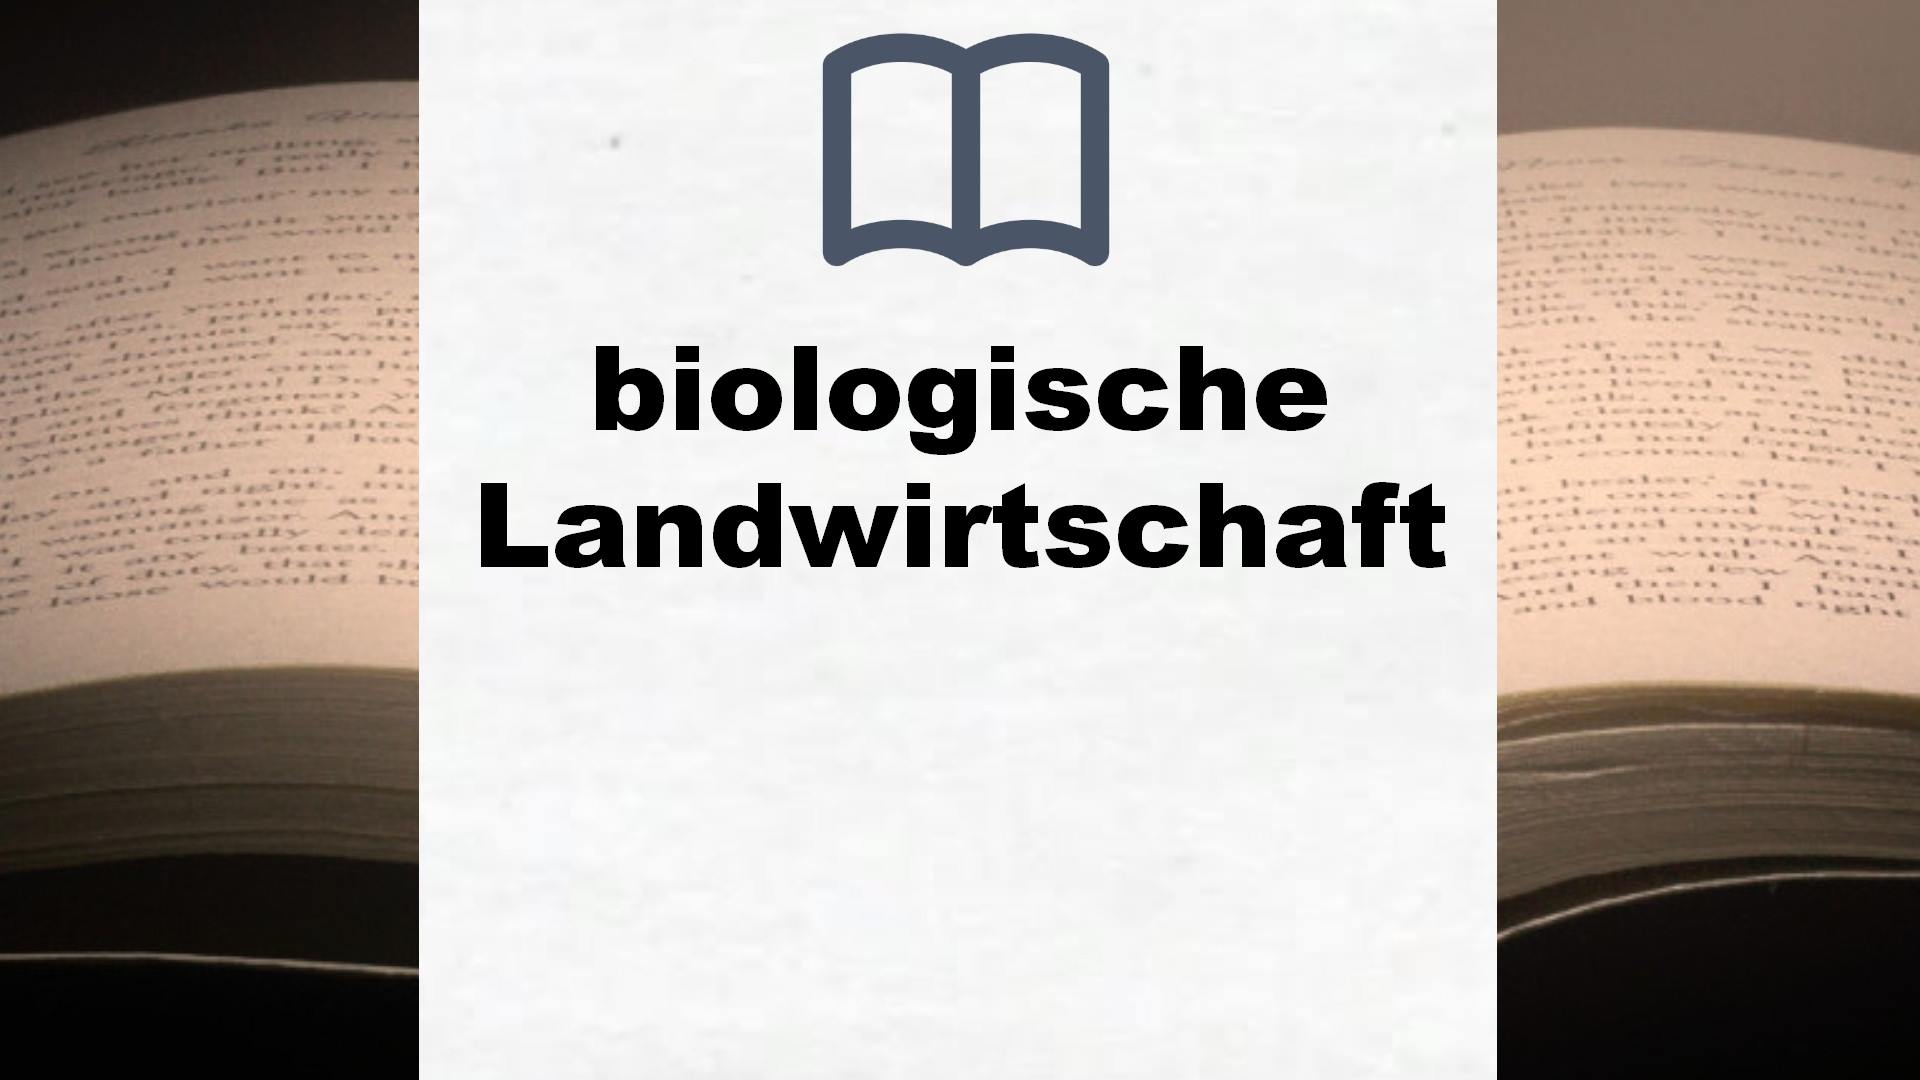 Bücher über biologische Landwirtschaft